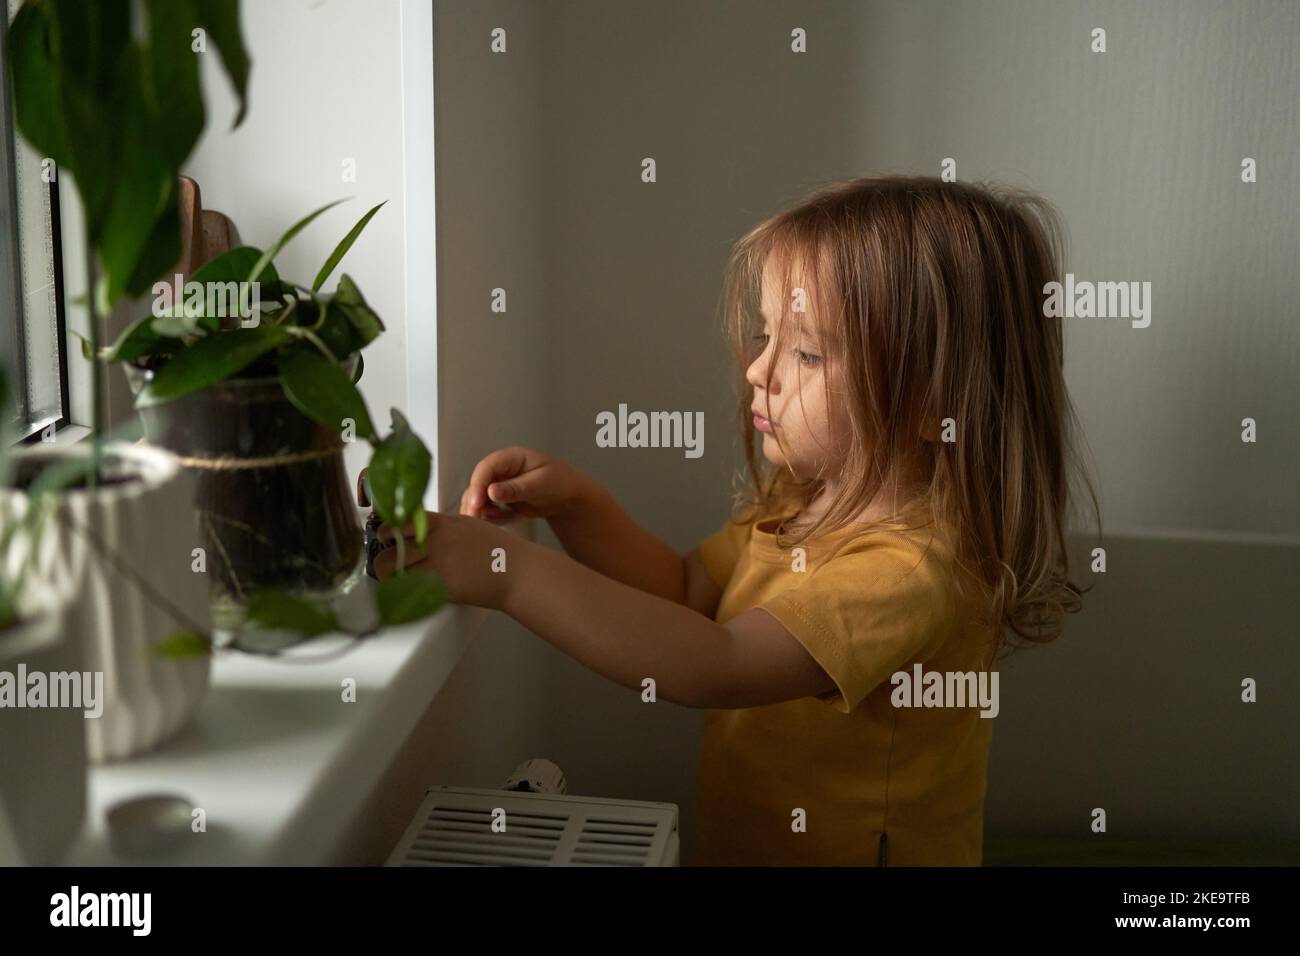 An einem bewölkten Herbsttag spielt das Kind am Fenster.häusliches Leben. Inneneinrichtung. Grüne Blumen auf der Fensterbank. Speicherplatz kopieren. Selektiver Fokus. Stockfoto